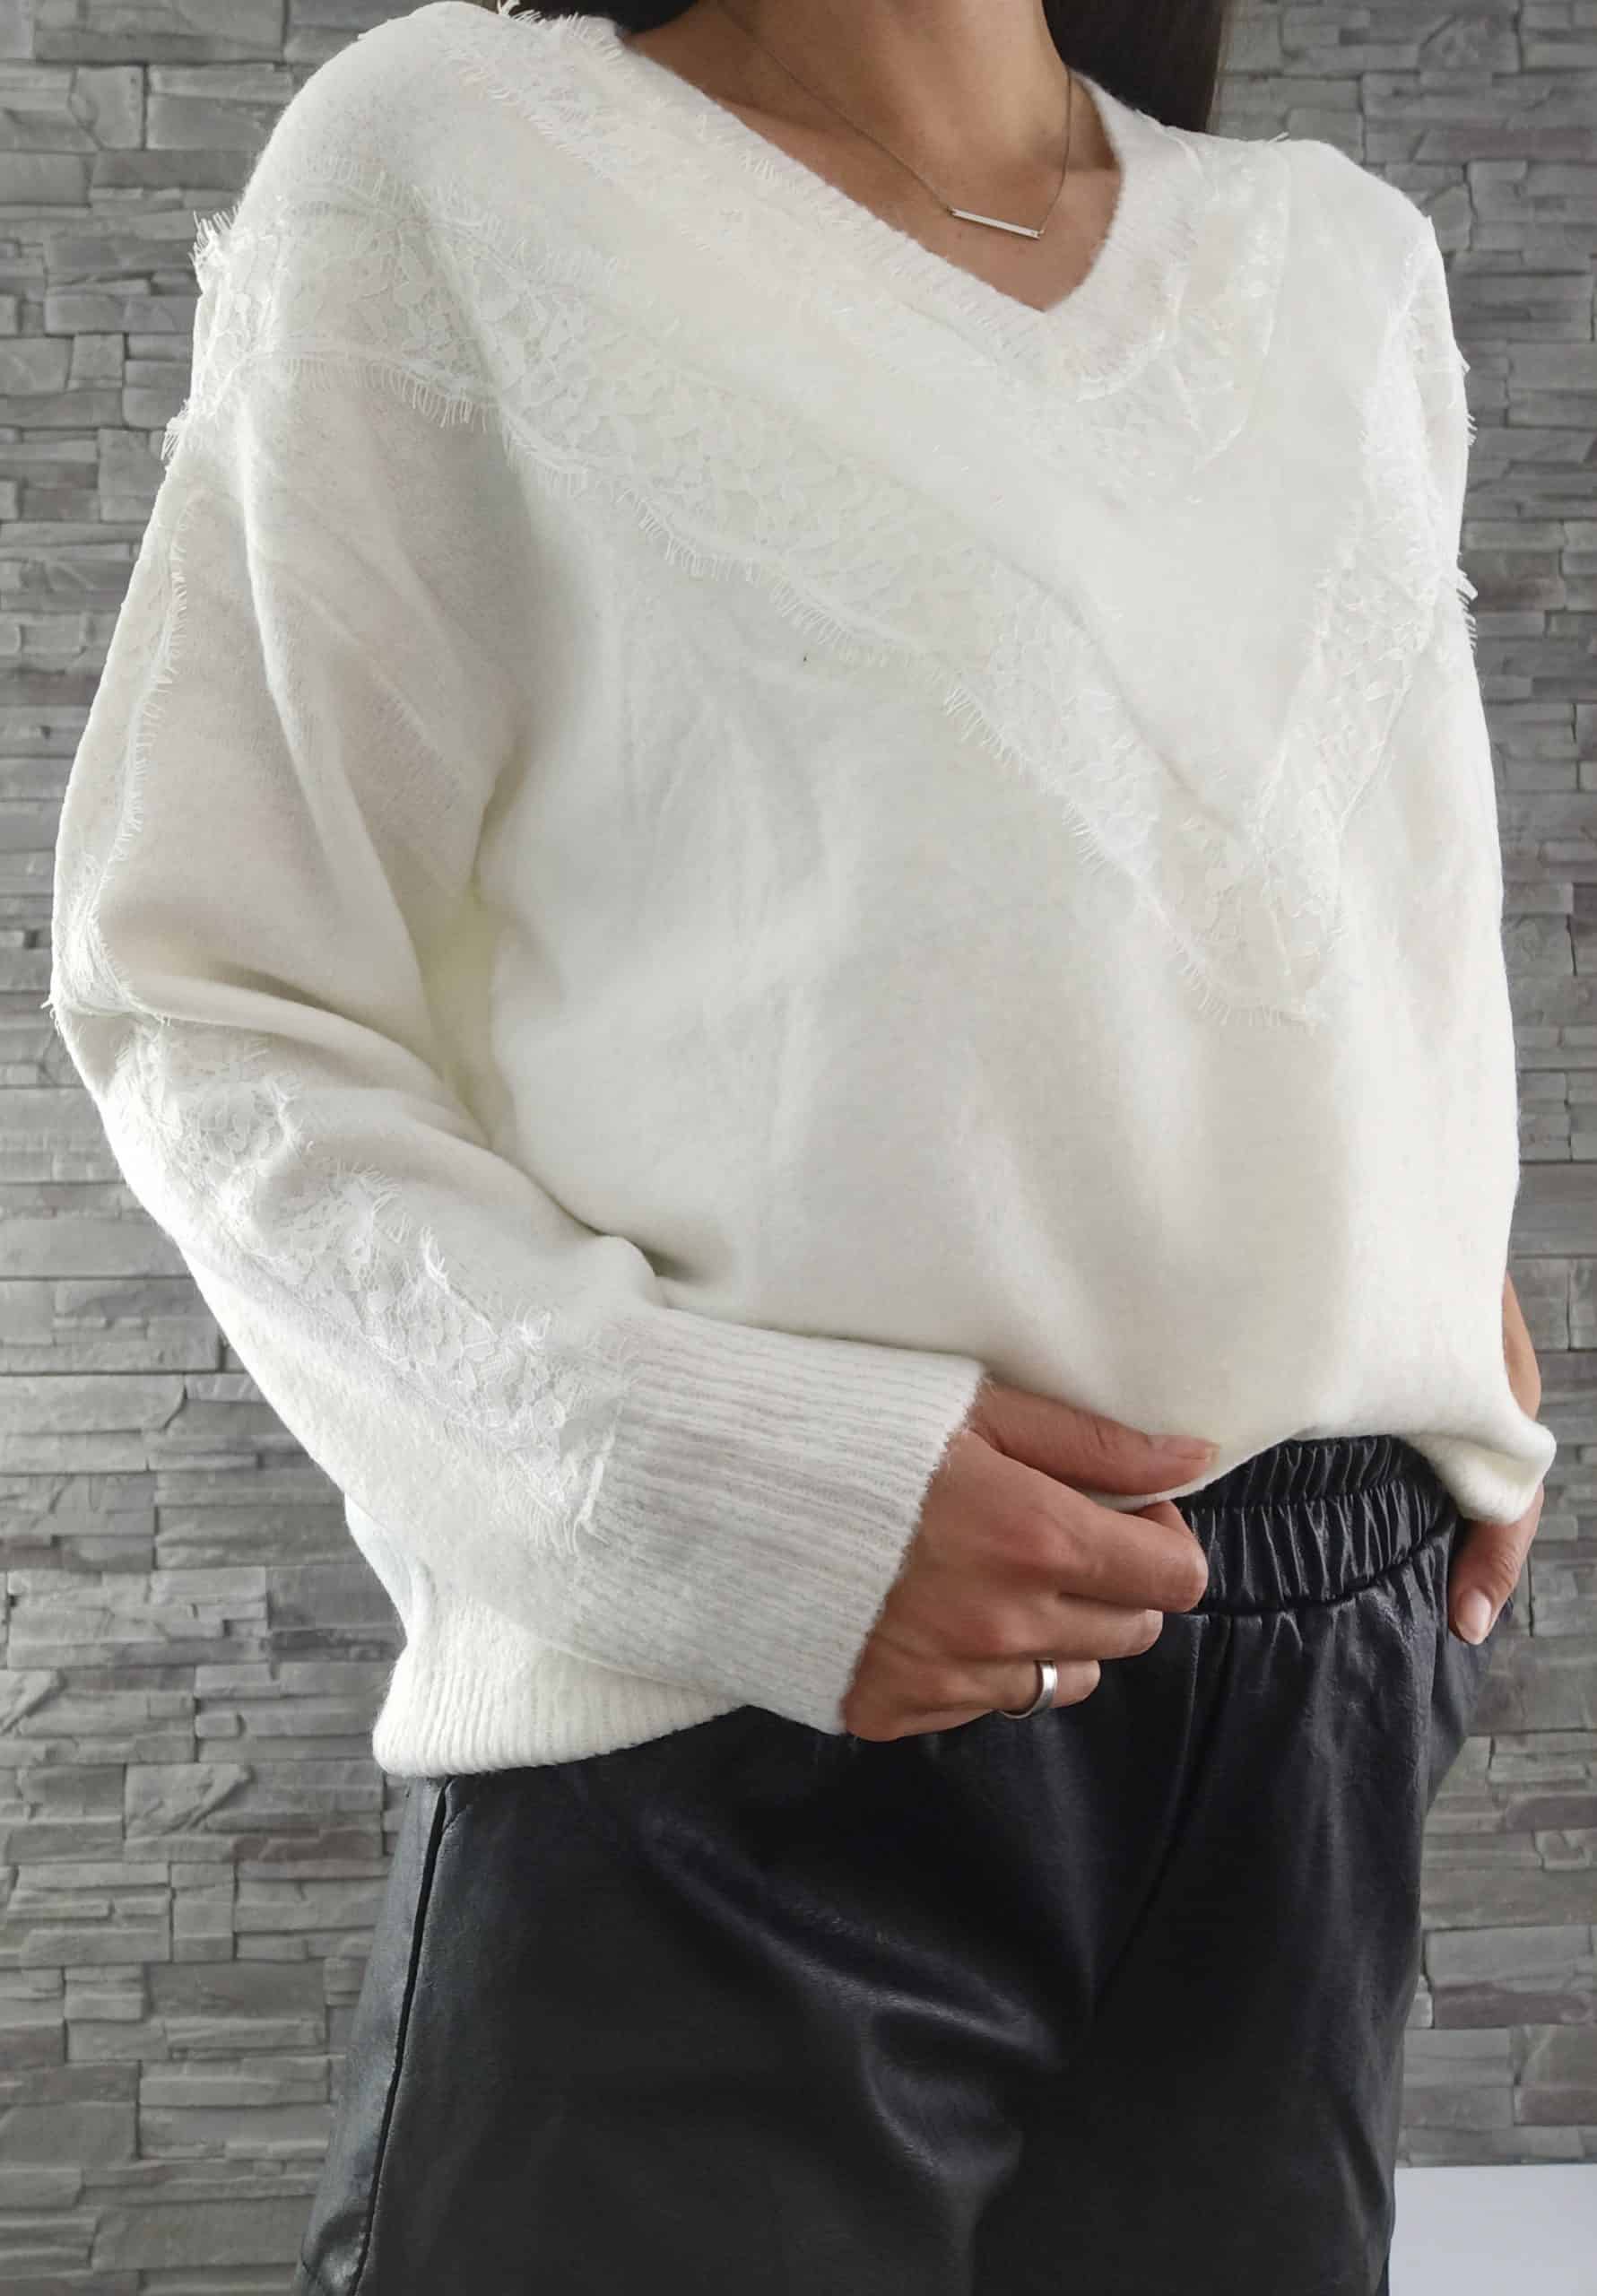 Vlnený sveter s čipkou